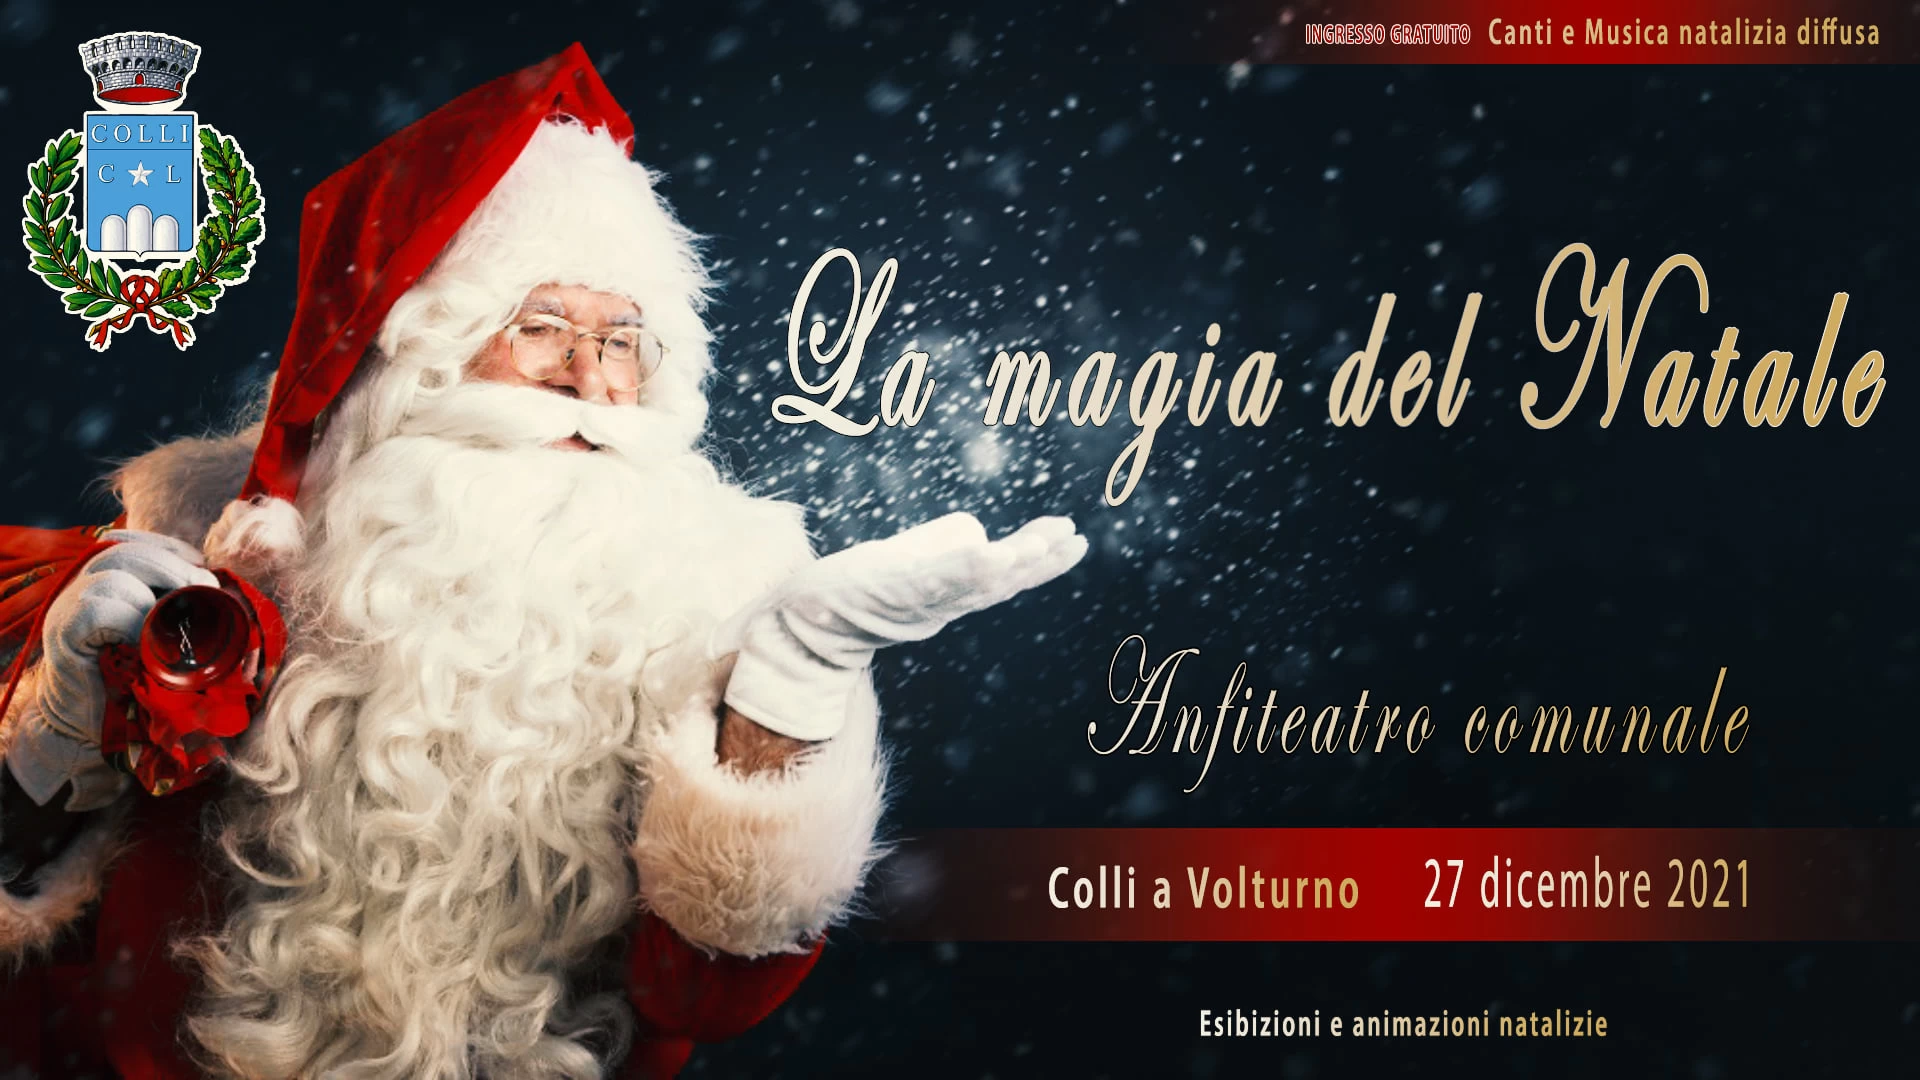 Colli a Volturno: la Magia del Natale il prossimo 27 dicembre incanterà l’anfiteatro comunale.